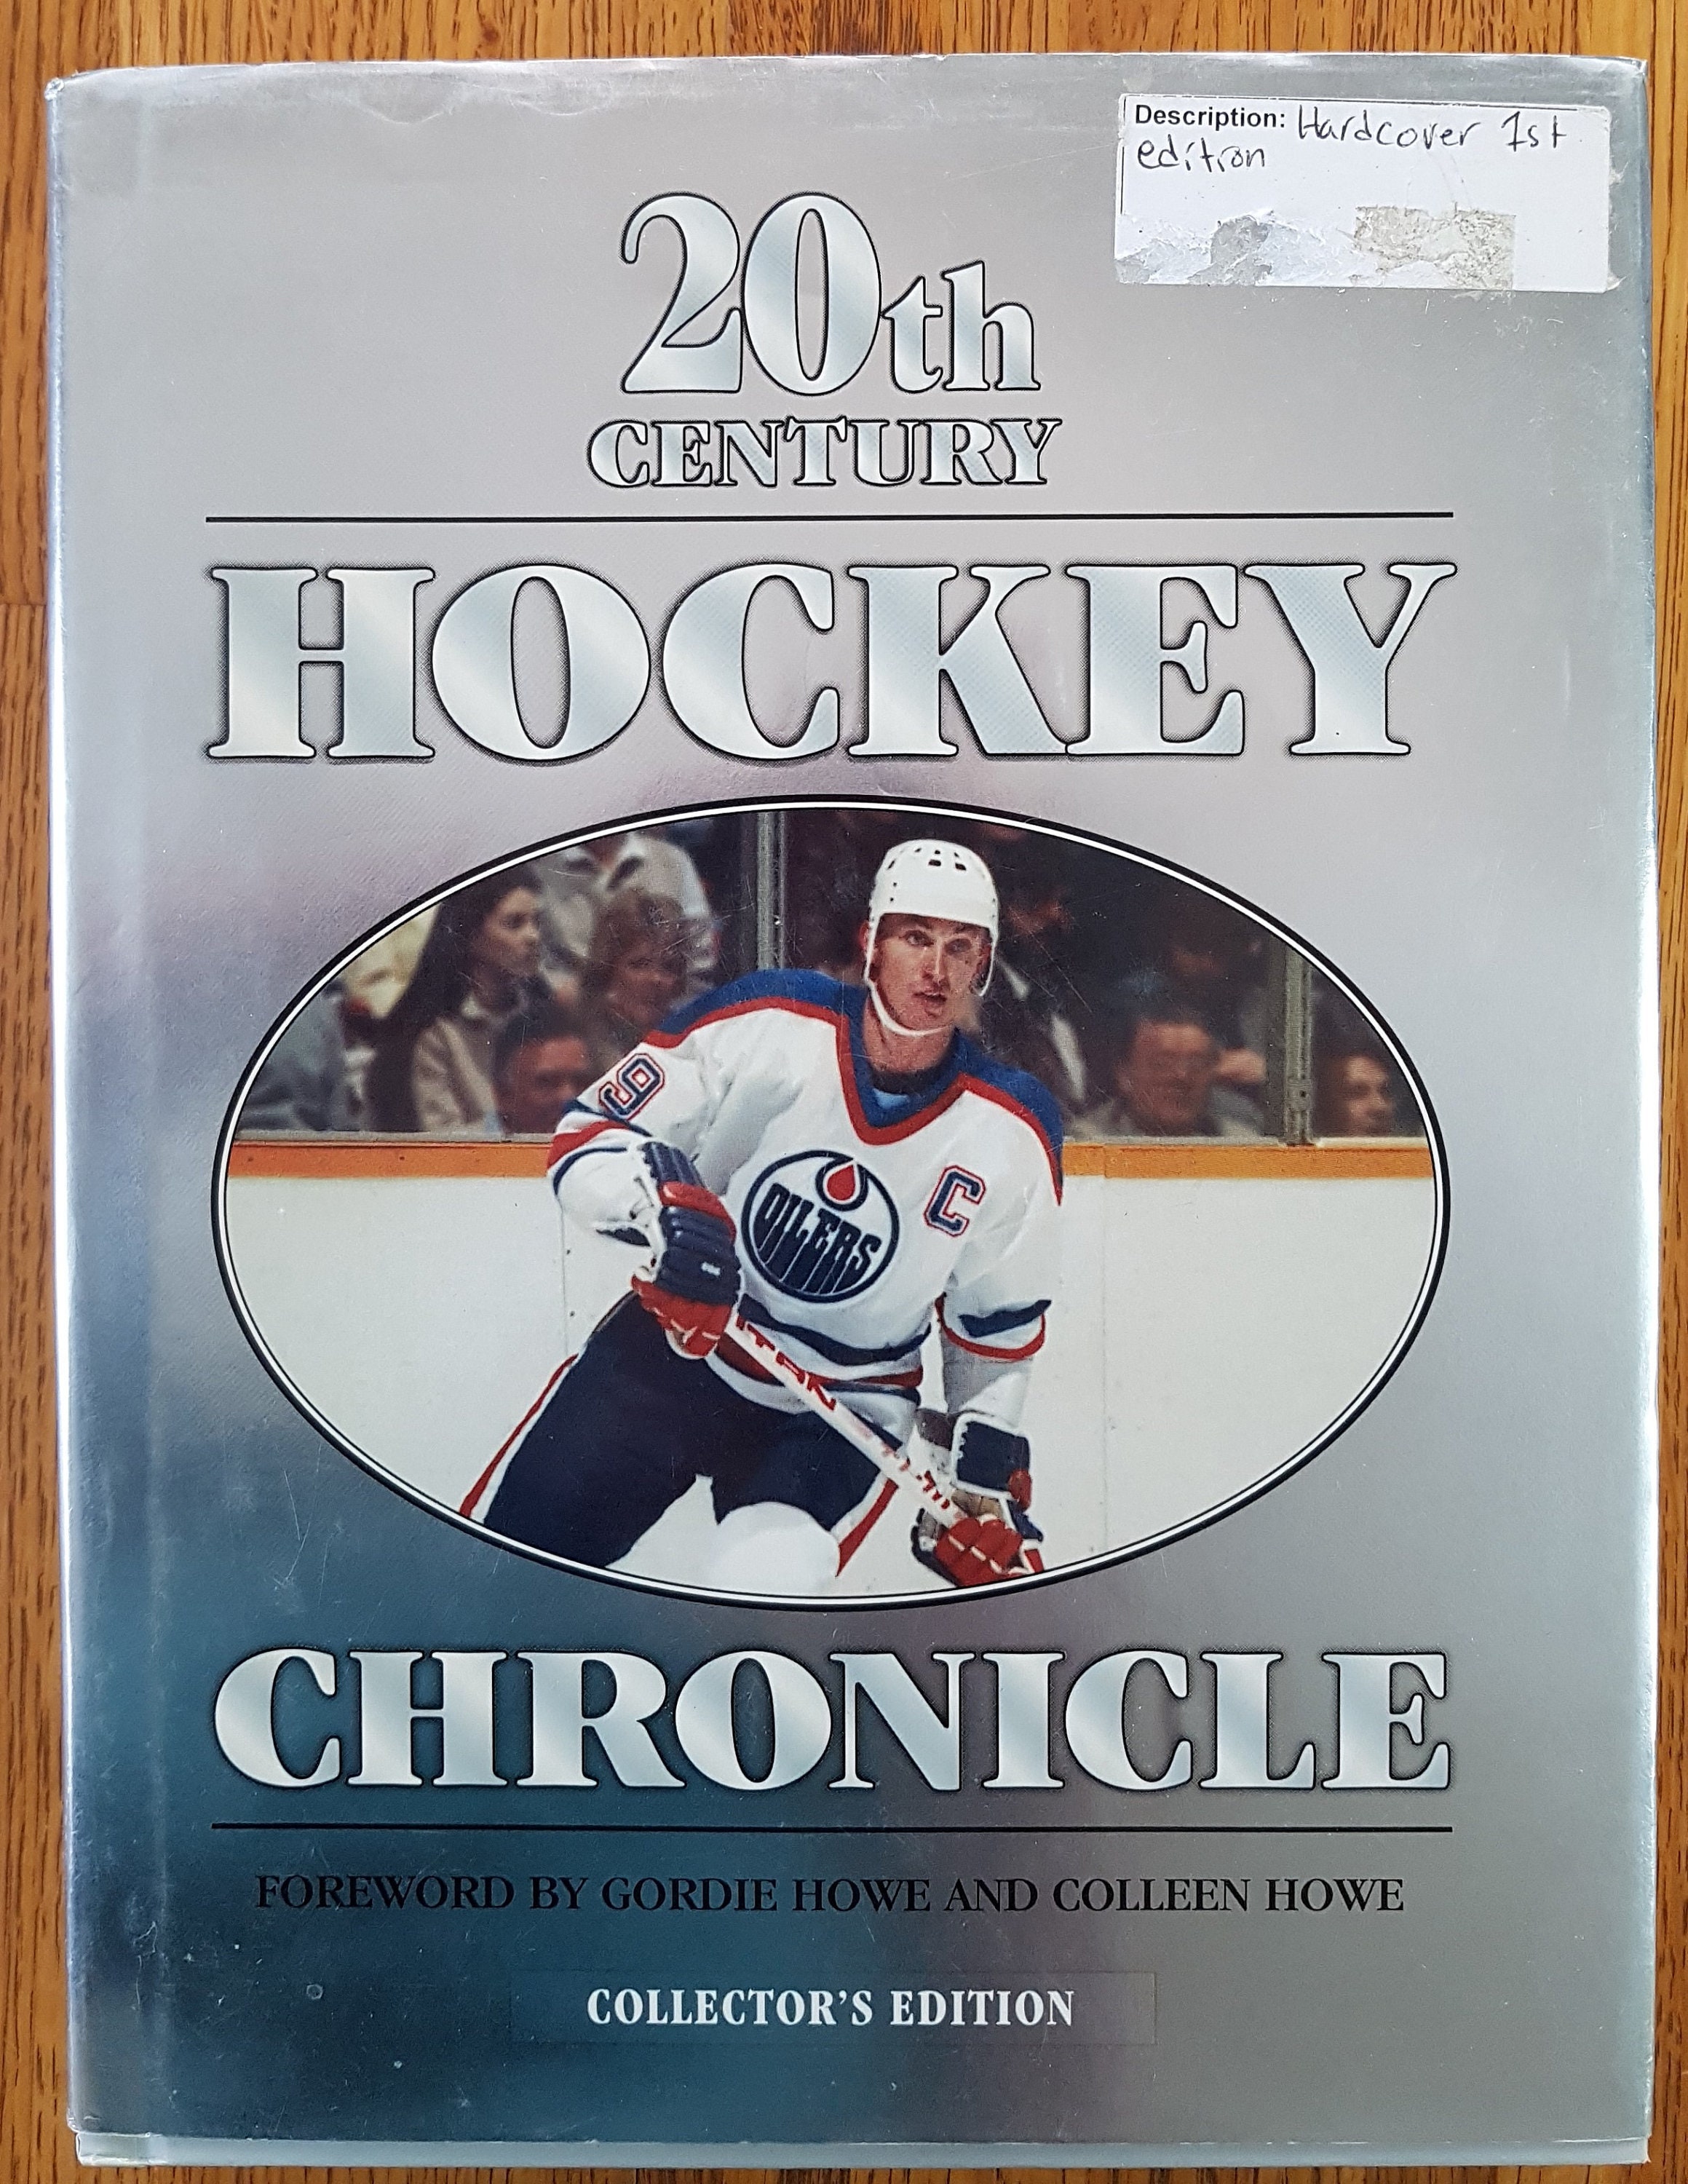 1907: II — Chronicles of Hockey